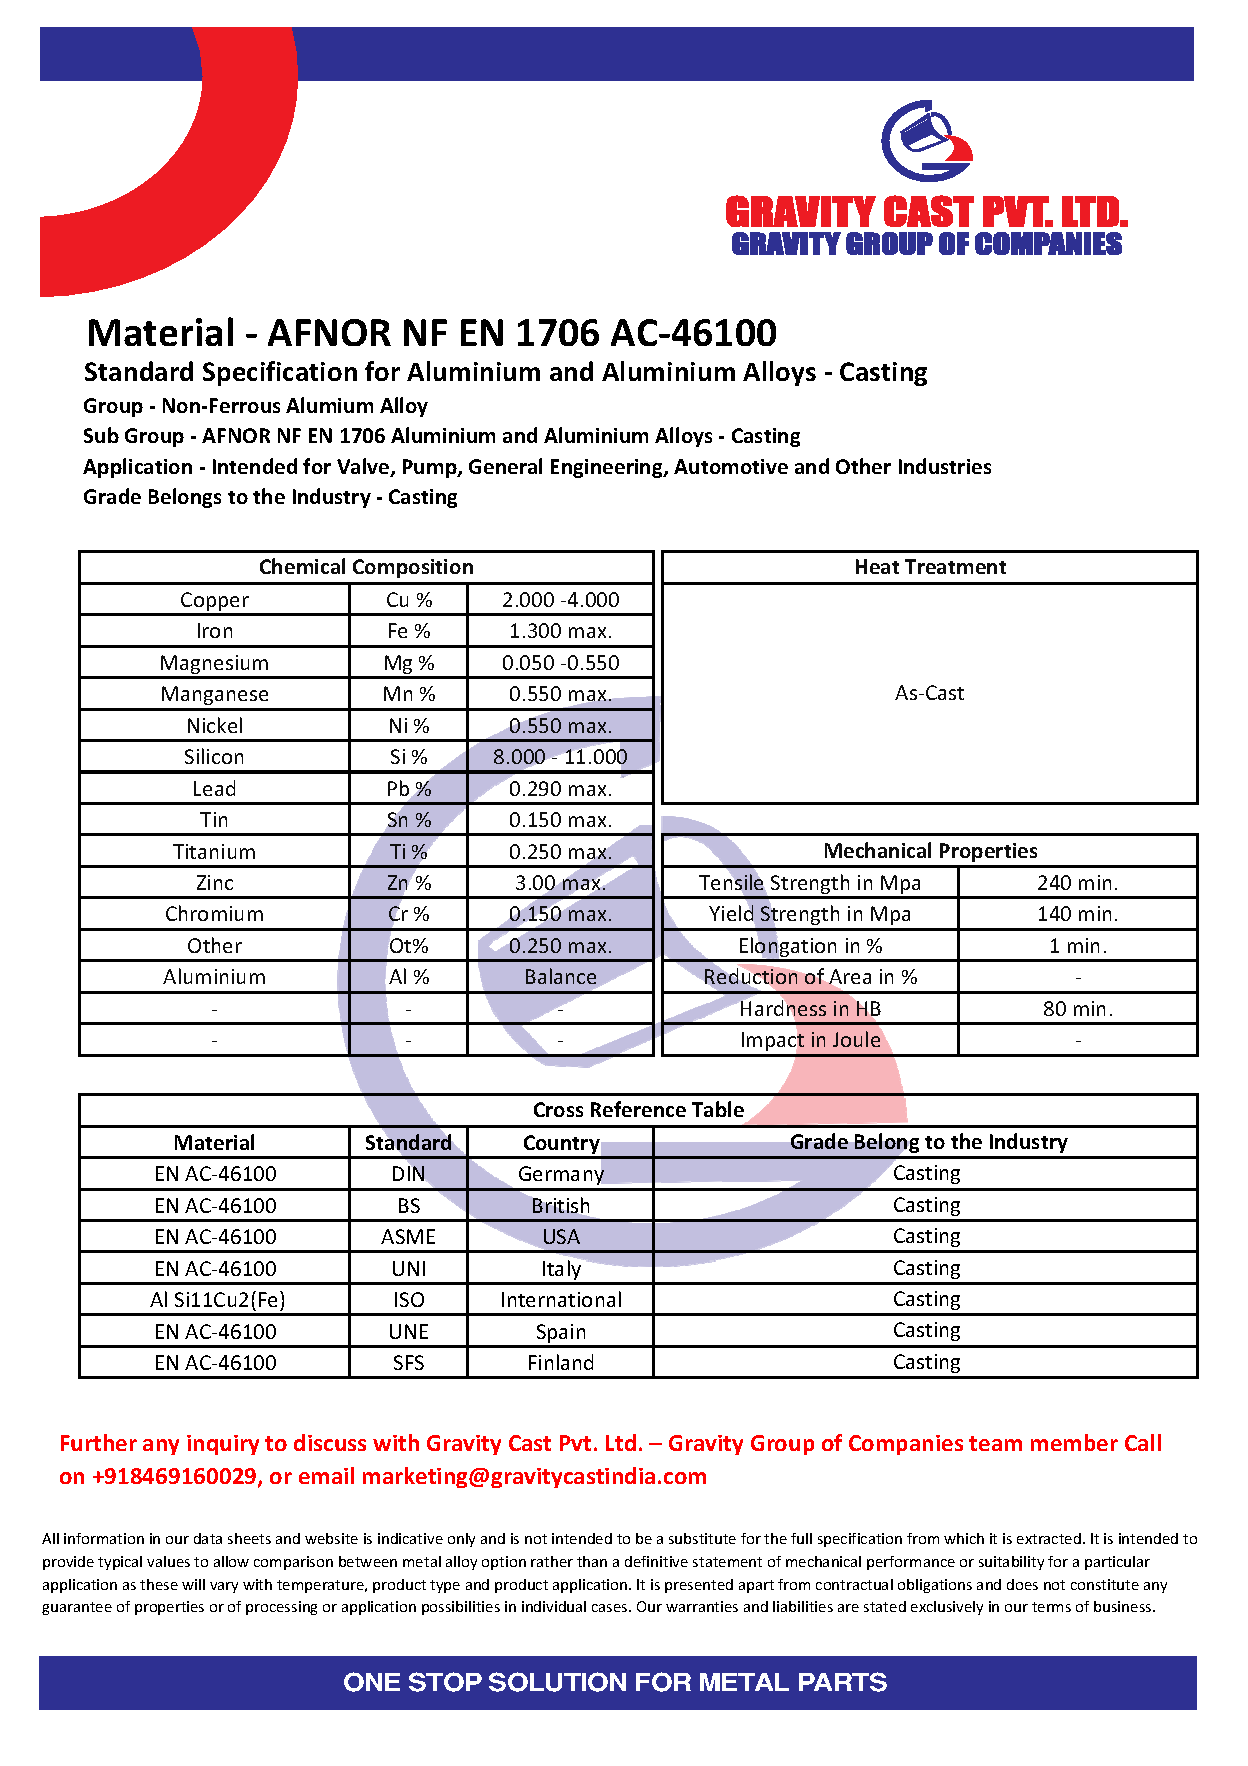 AFNOR NF EN 1706 AC-46100.pdf